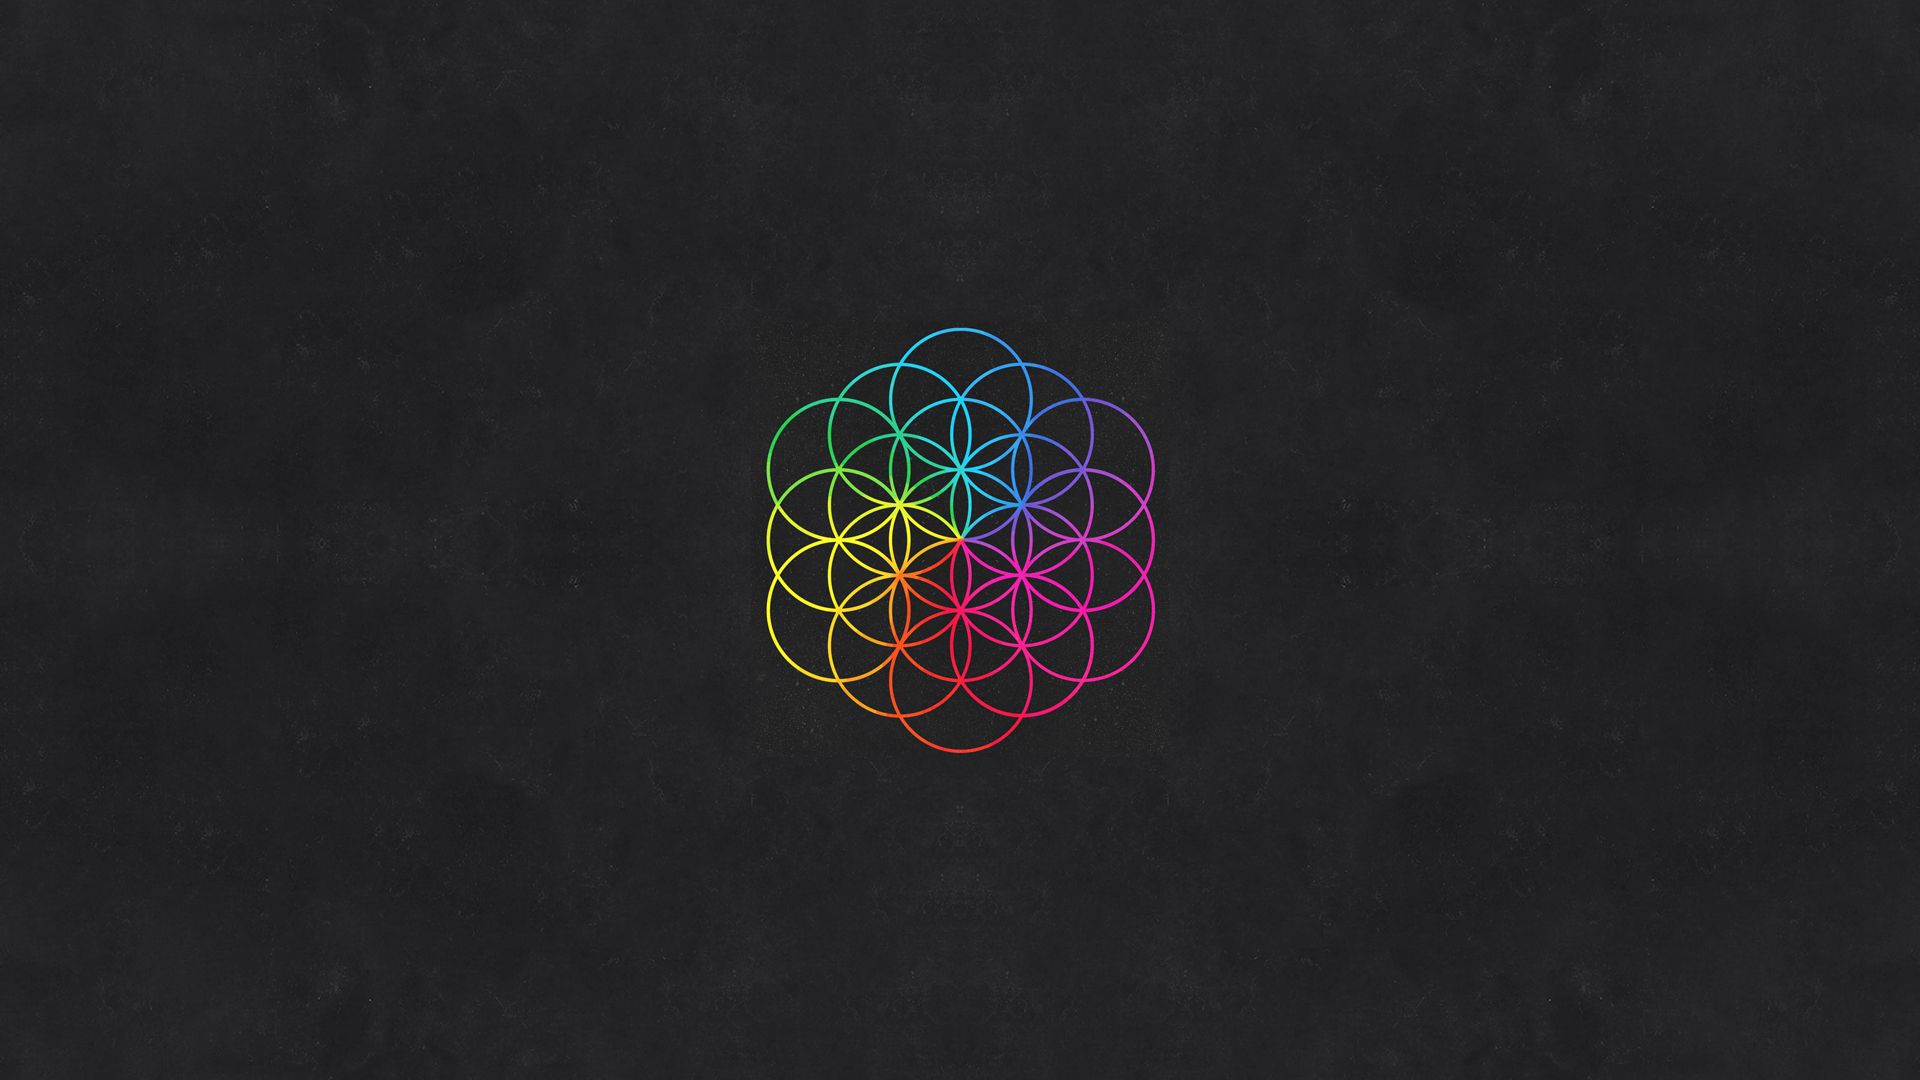 Coldplay rompe barreras con su accesibilidad inclusiva